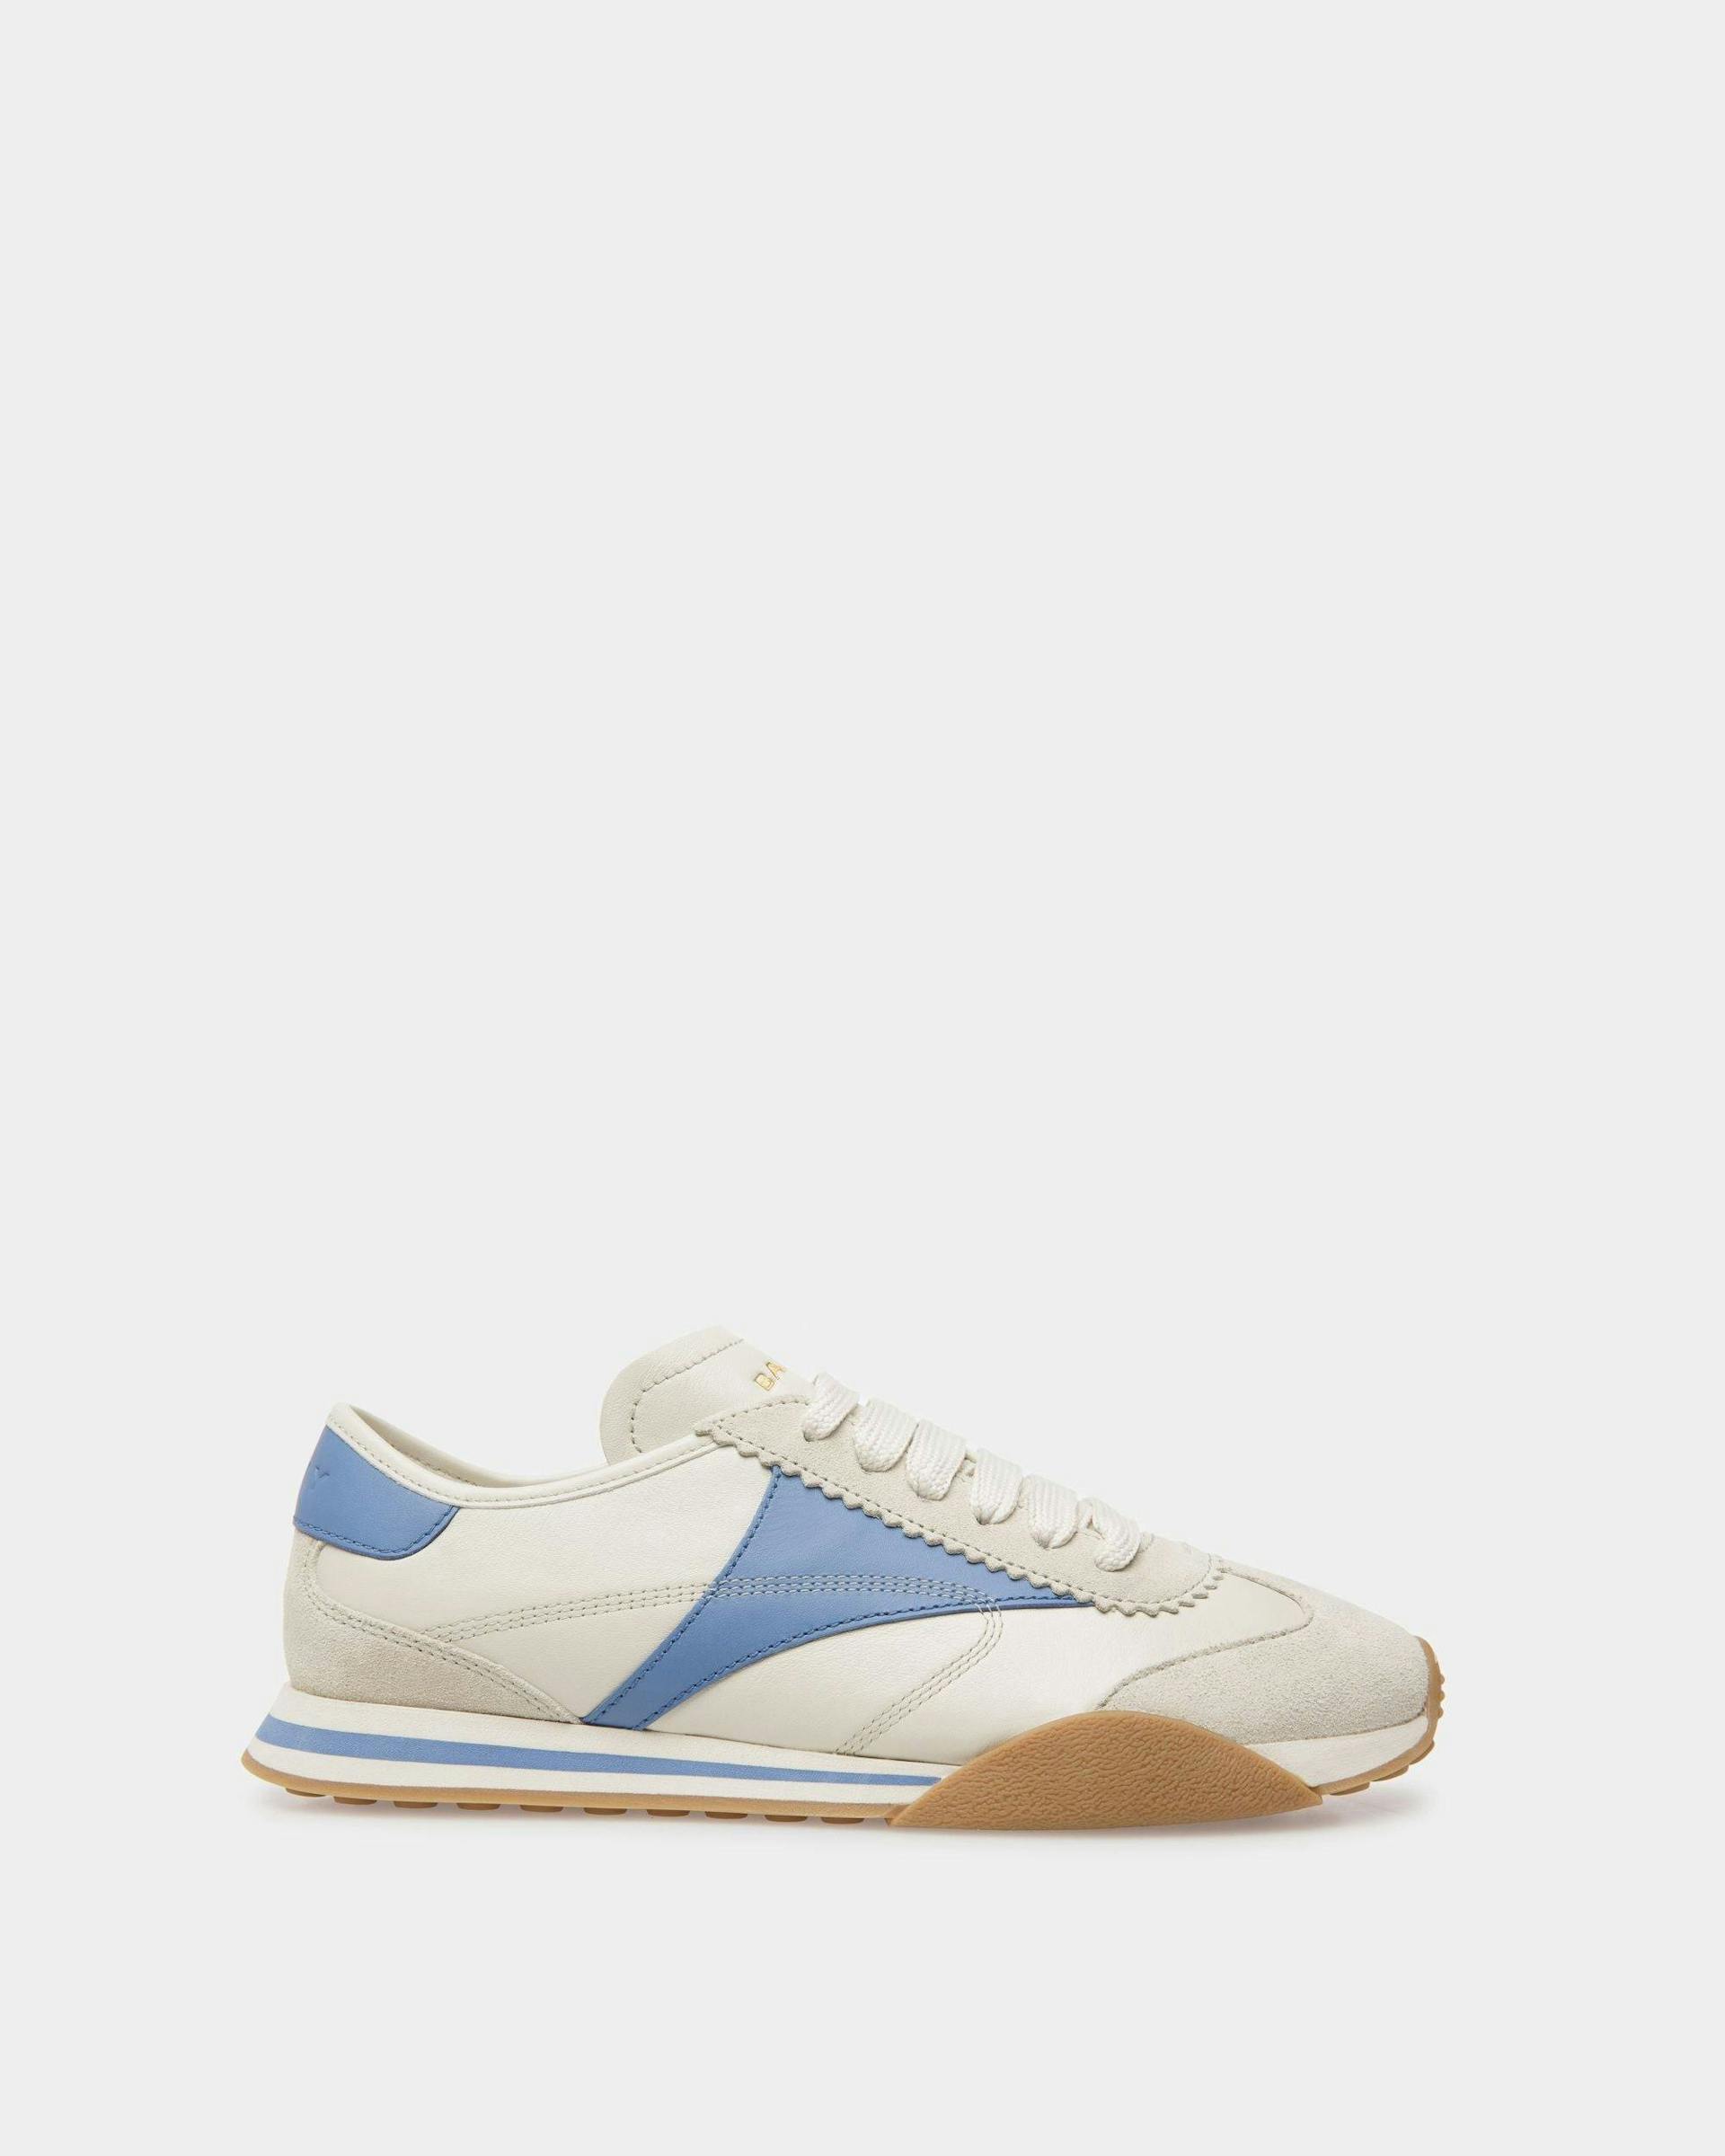 Sneakers Sussex En cuir blanc poussière et bleu - Femme - Bally - 01